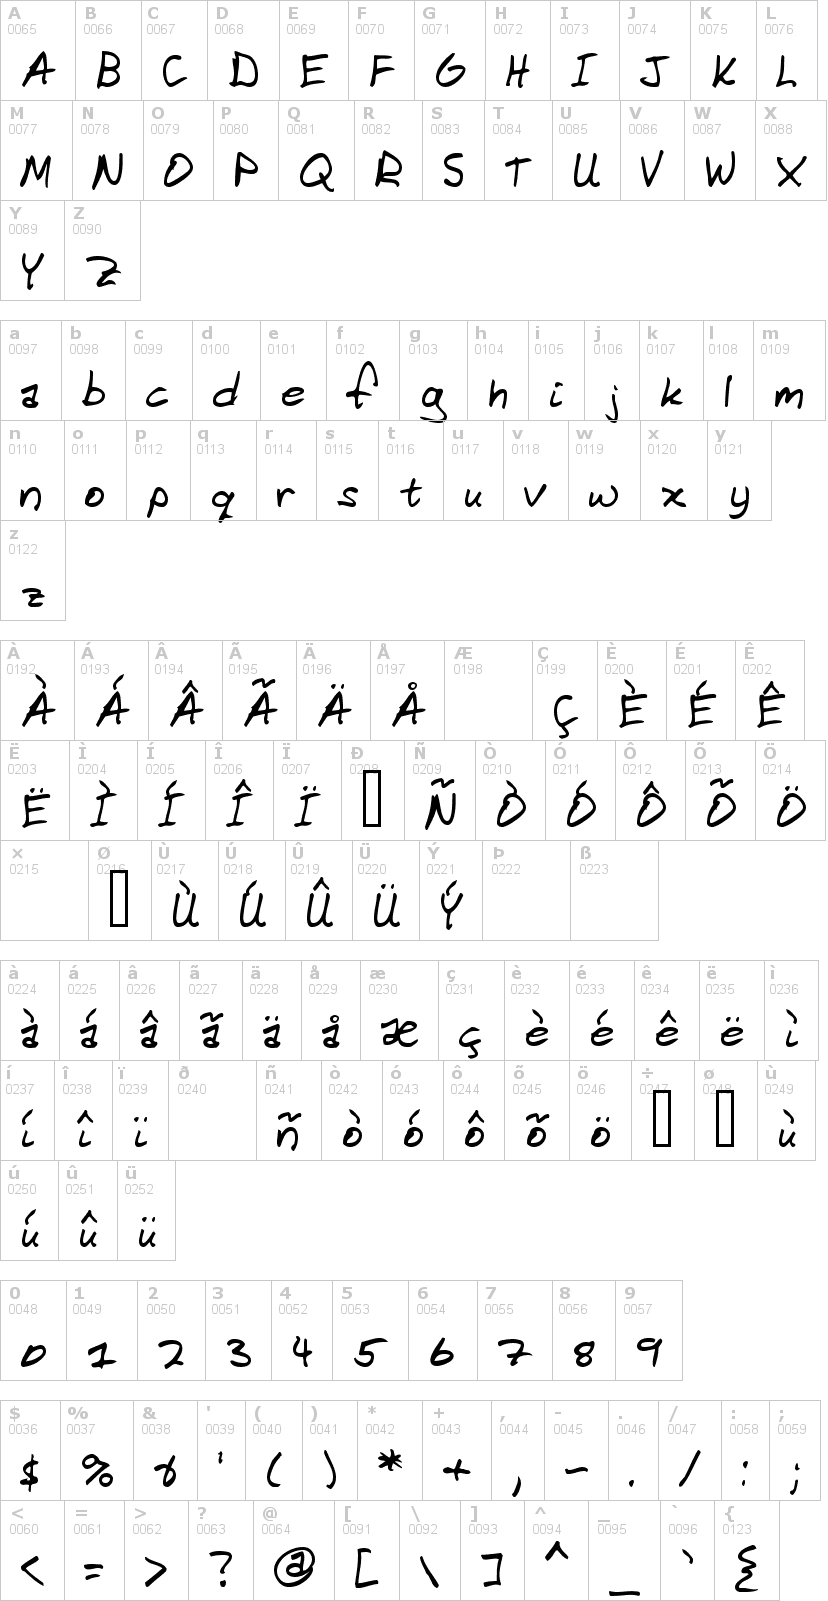 Lettere dell'alfabeto del font domestic-manners con le quali è possibile realizzare adesivi prespaziati